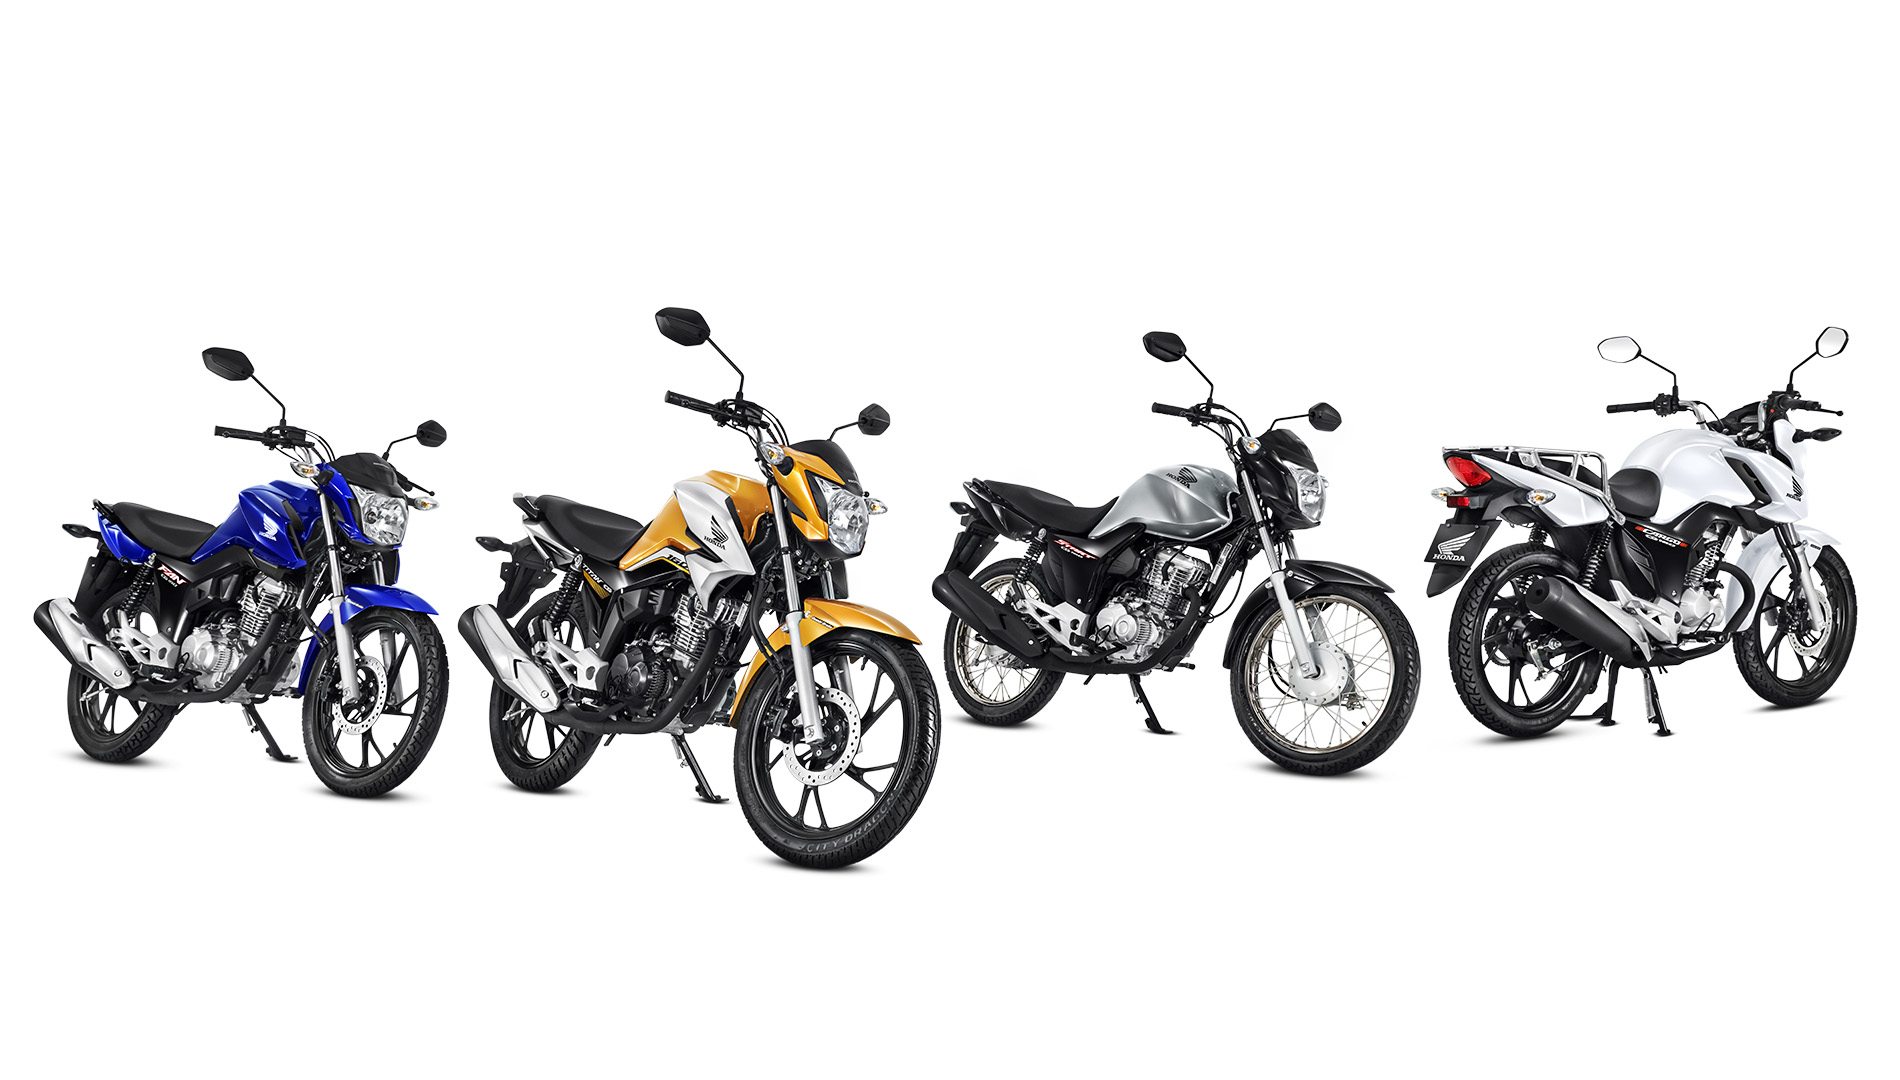 4 motocicletas Honda CG 160 2023, nas cores azul, amarelo, prata e branco, estacionadas